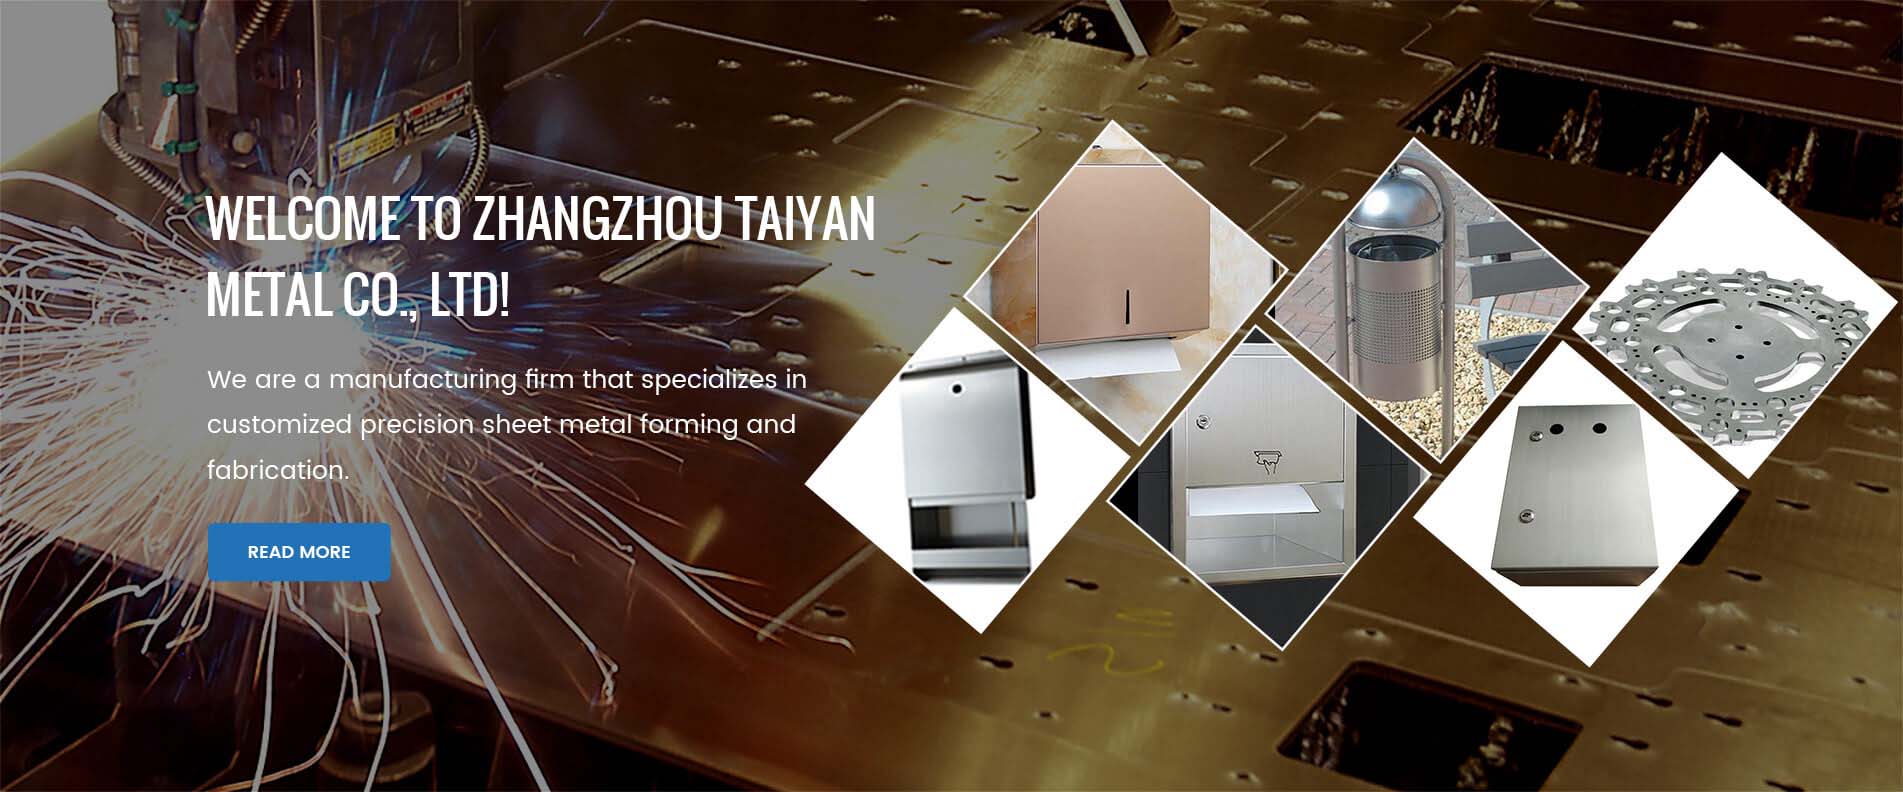 Zhangzhou Taiyan Metal Co. Ltd